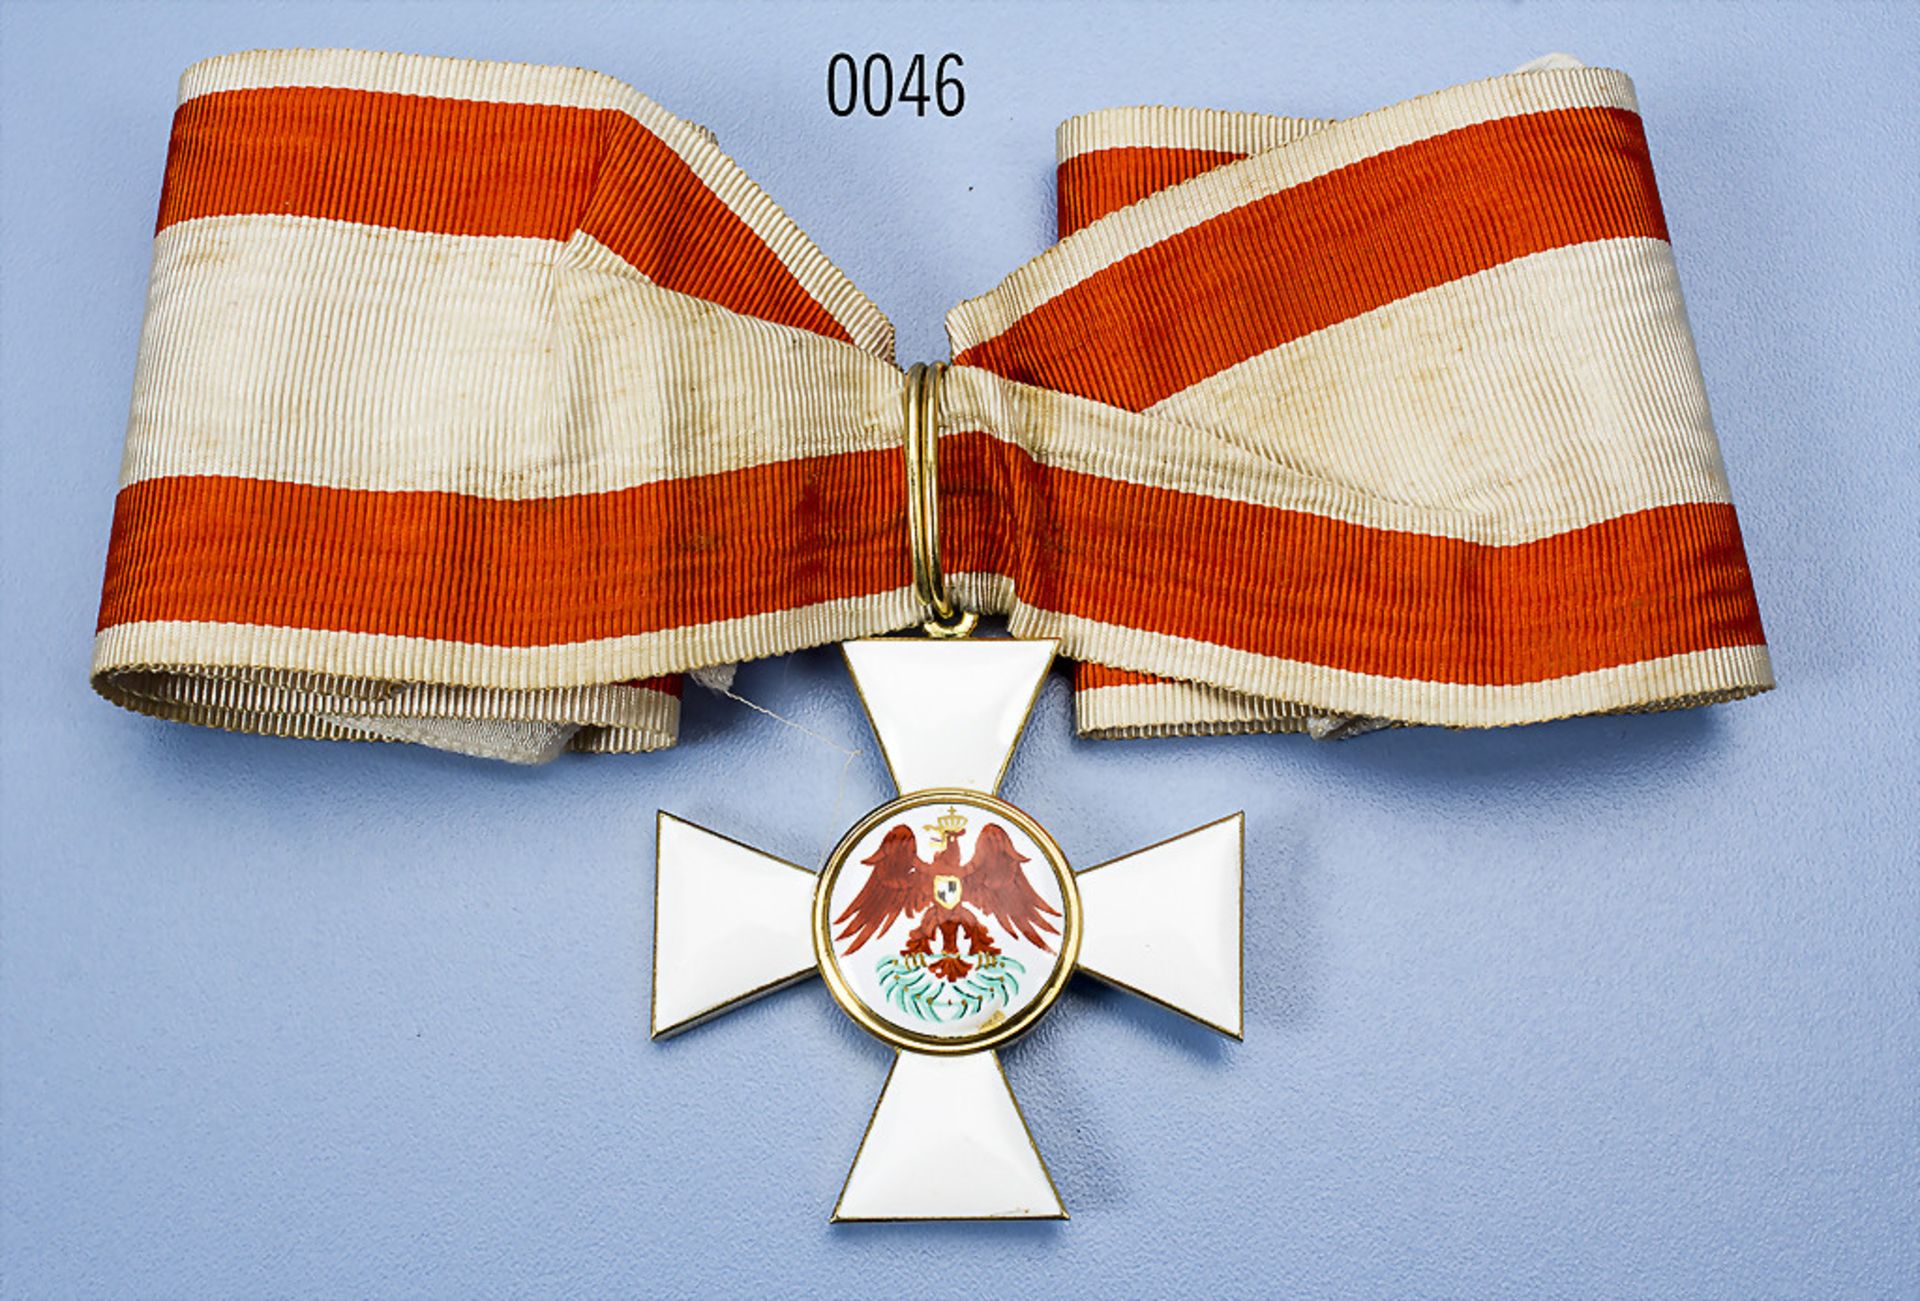 Preußen Roter Adler-Orden 2. Klasse, Ritzmarke "W" im unteren Kreuzarm, Emailchip im rechten unteren